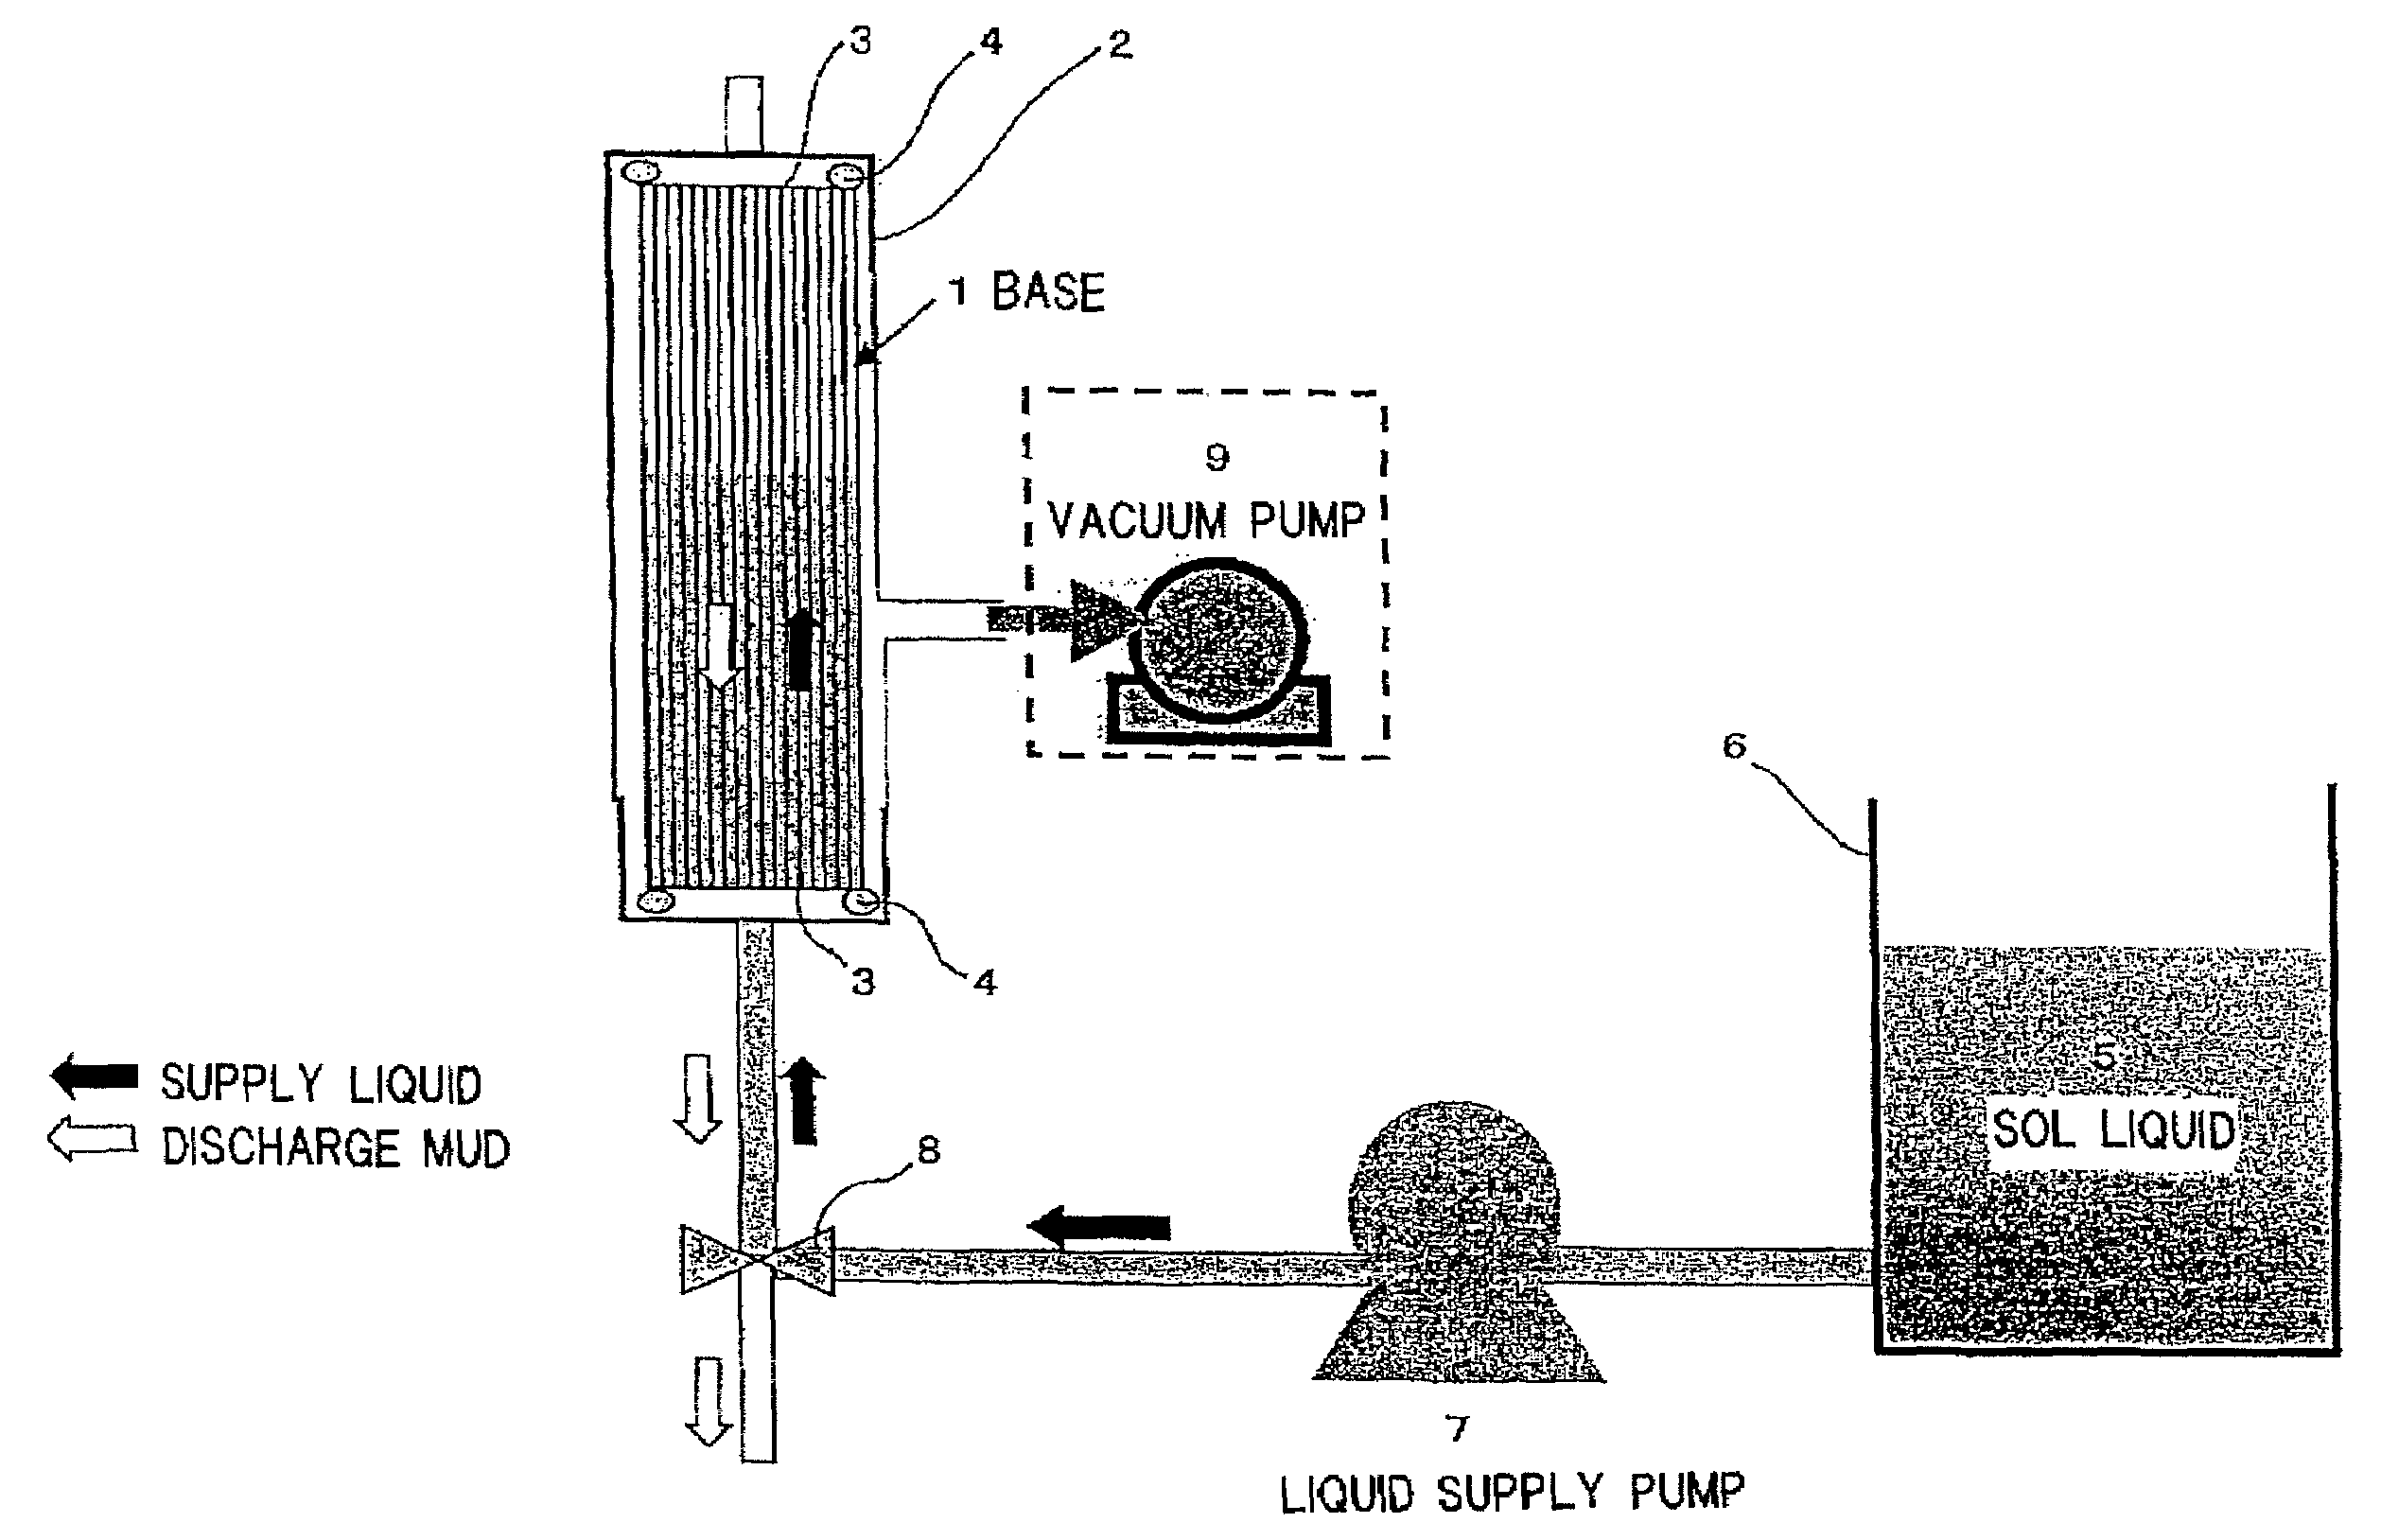 Method of manufacturing ceramic porous membrane